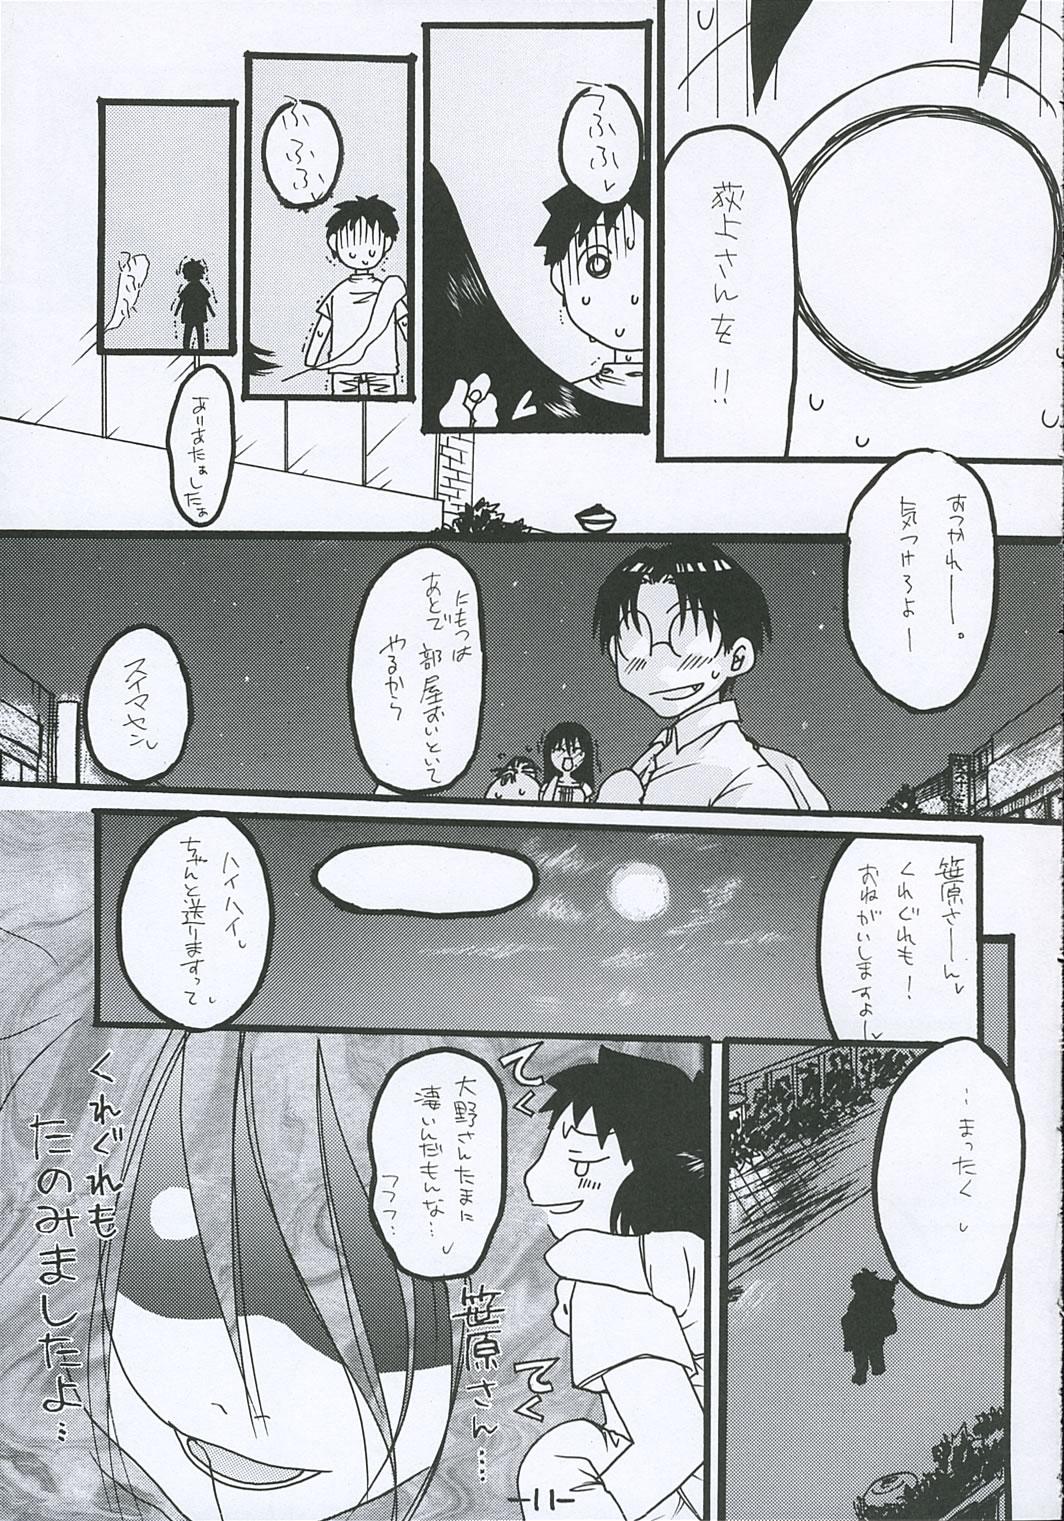 Gordinha [Tentai→Kansoku] O-TO-GA-ME Heart (Genshiken) - Genshiken Mmd - Page 10